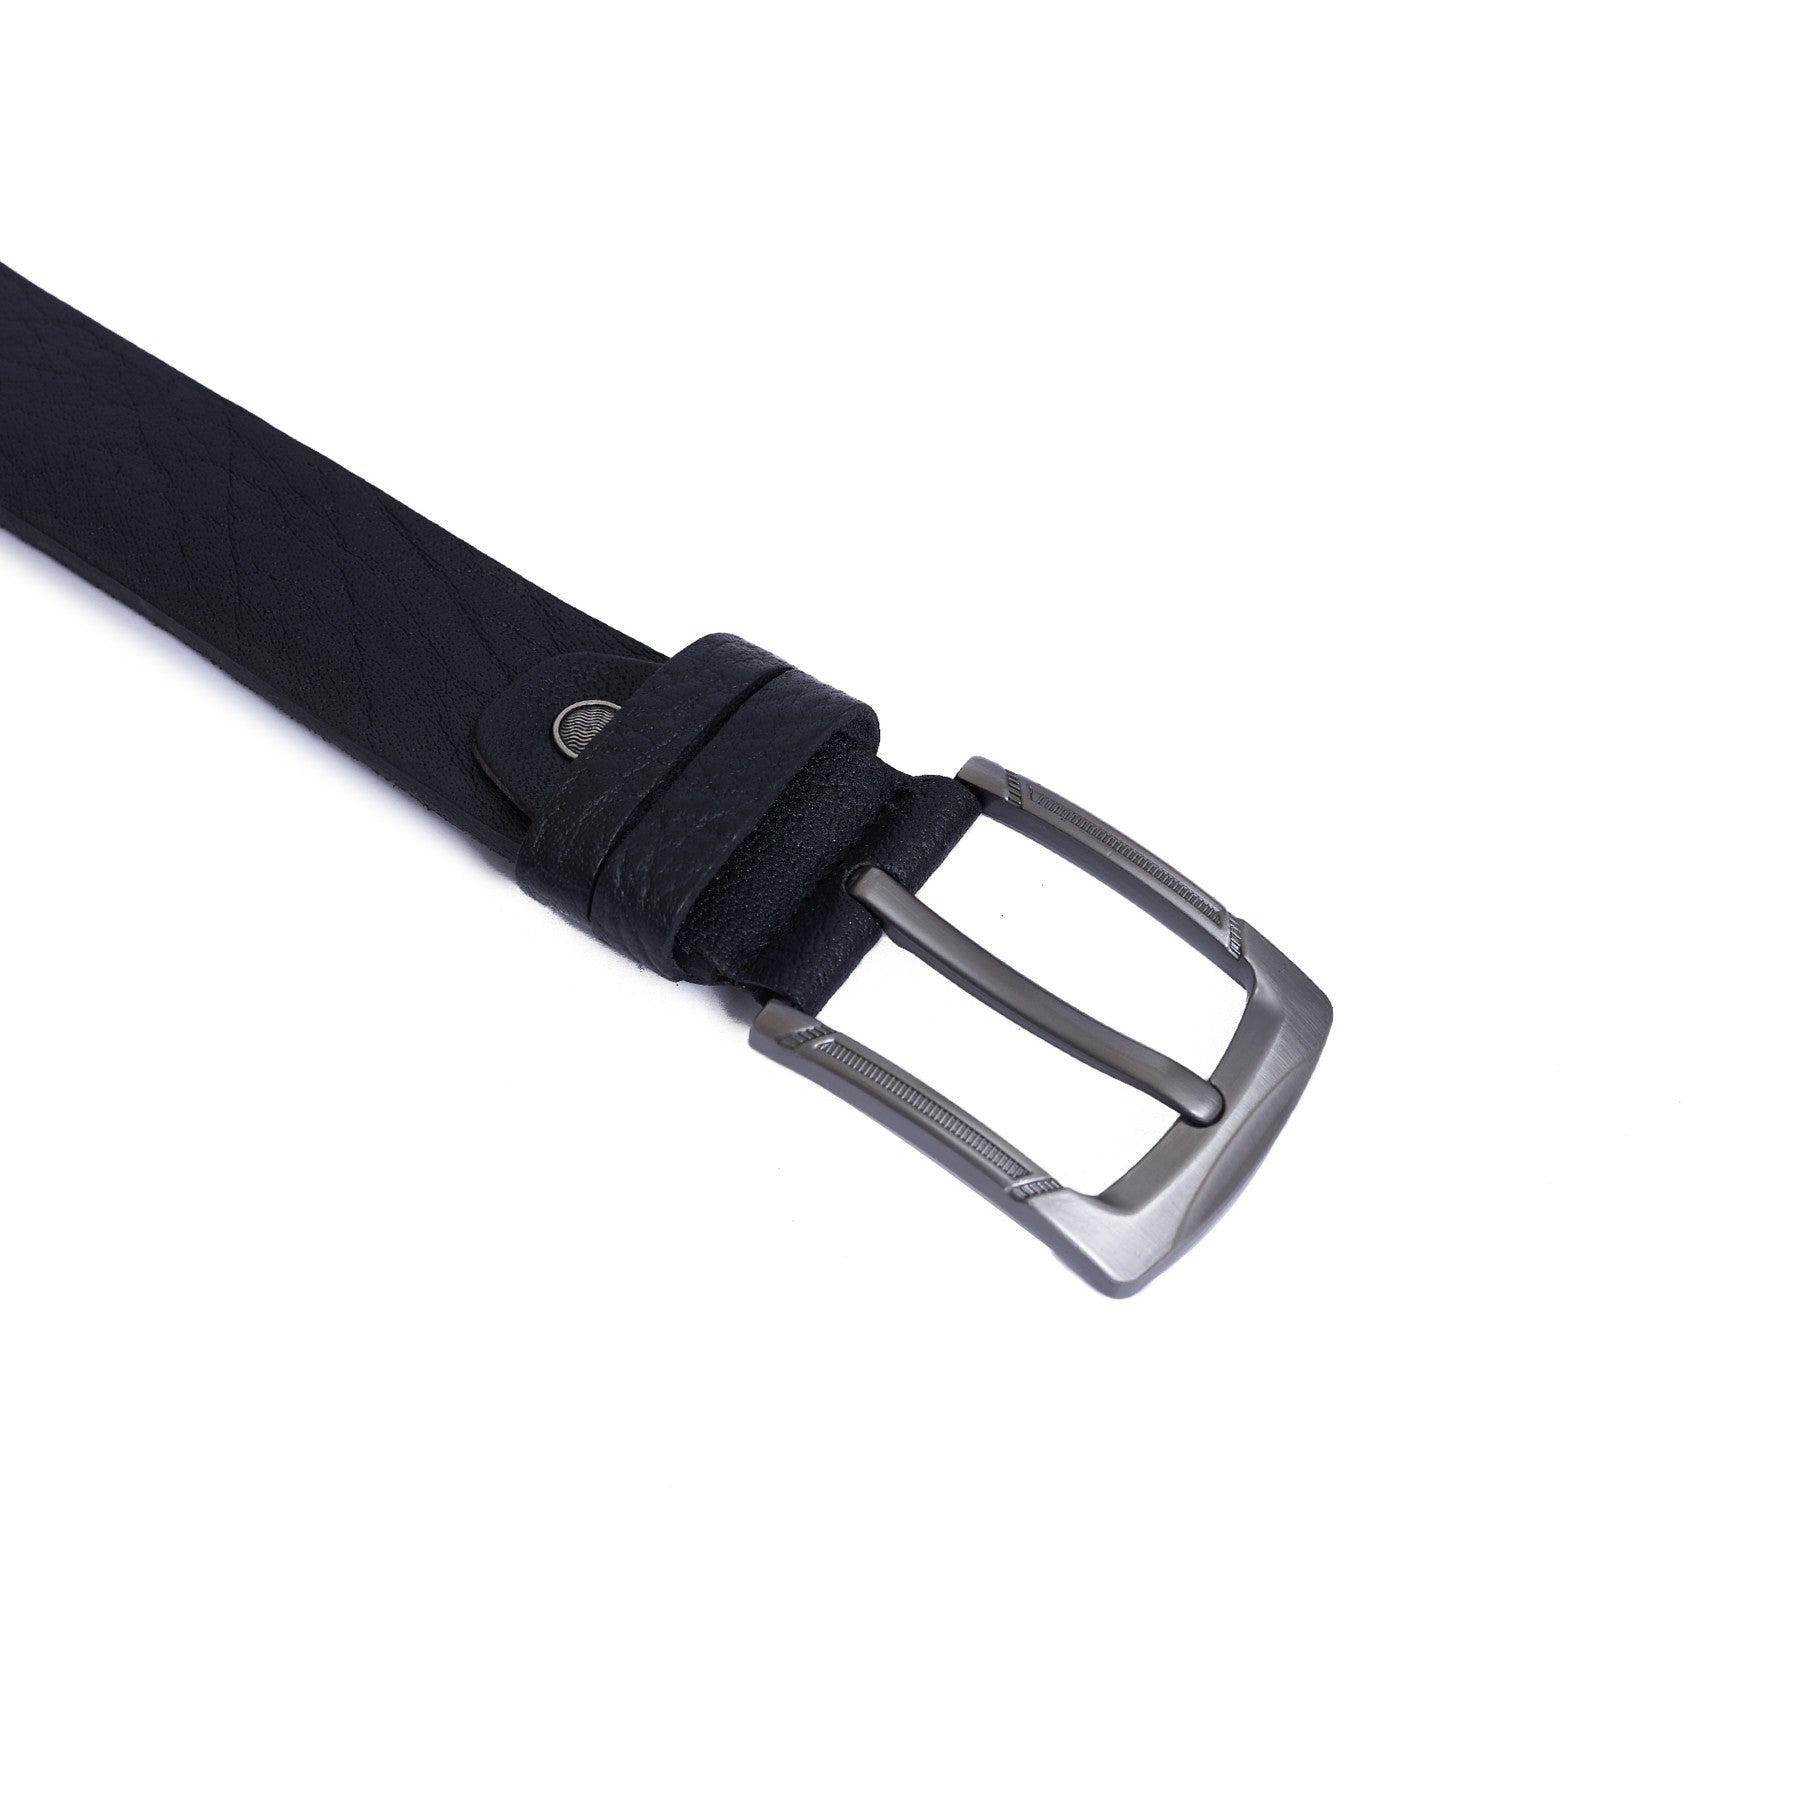 4 CM Super genuine leather Belt - Super Lux - Black Color Model B9001